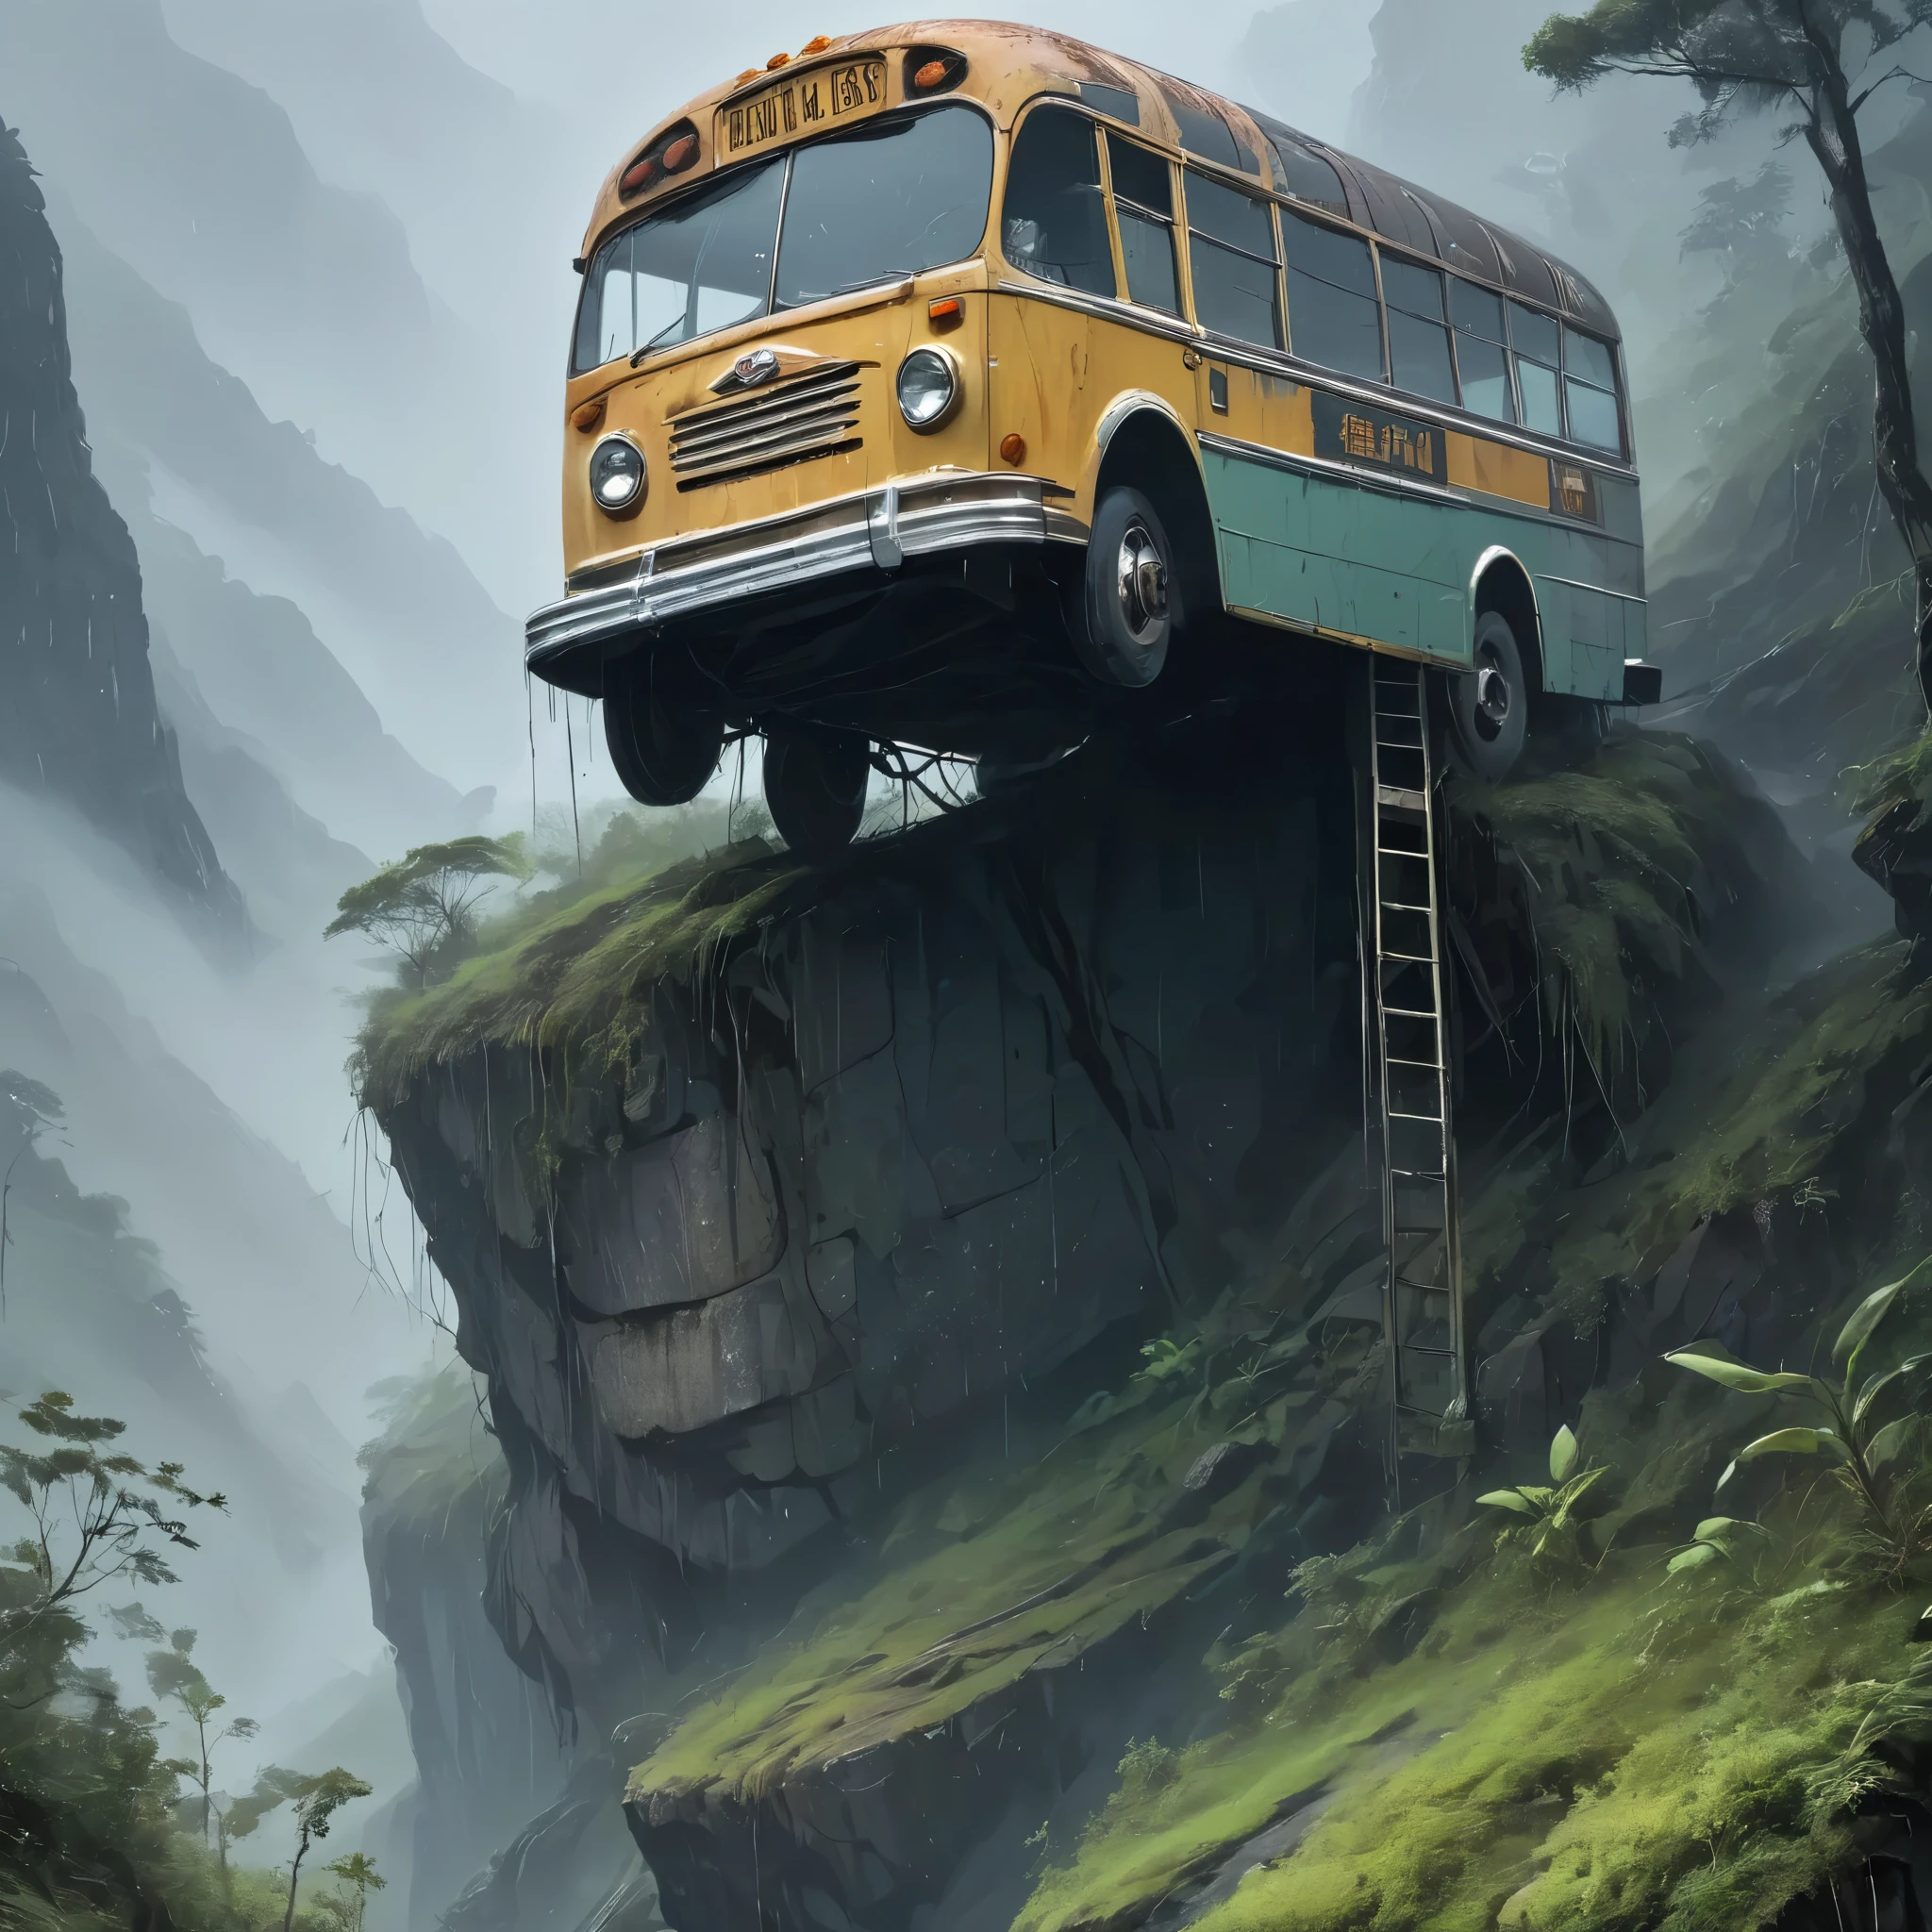 Посреди проливного ливня, окутанного густым туманом, на снимке запечатлен обветренный и ветхий автобус, ненадежно стоящий на вершине скалистой горы, служащий необычным мостом, соединяющим два разных мира.